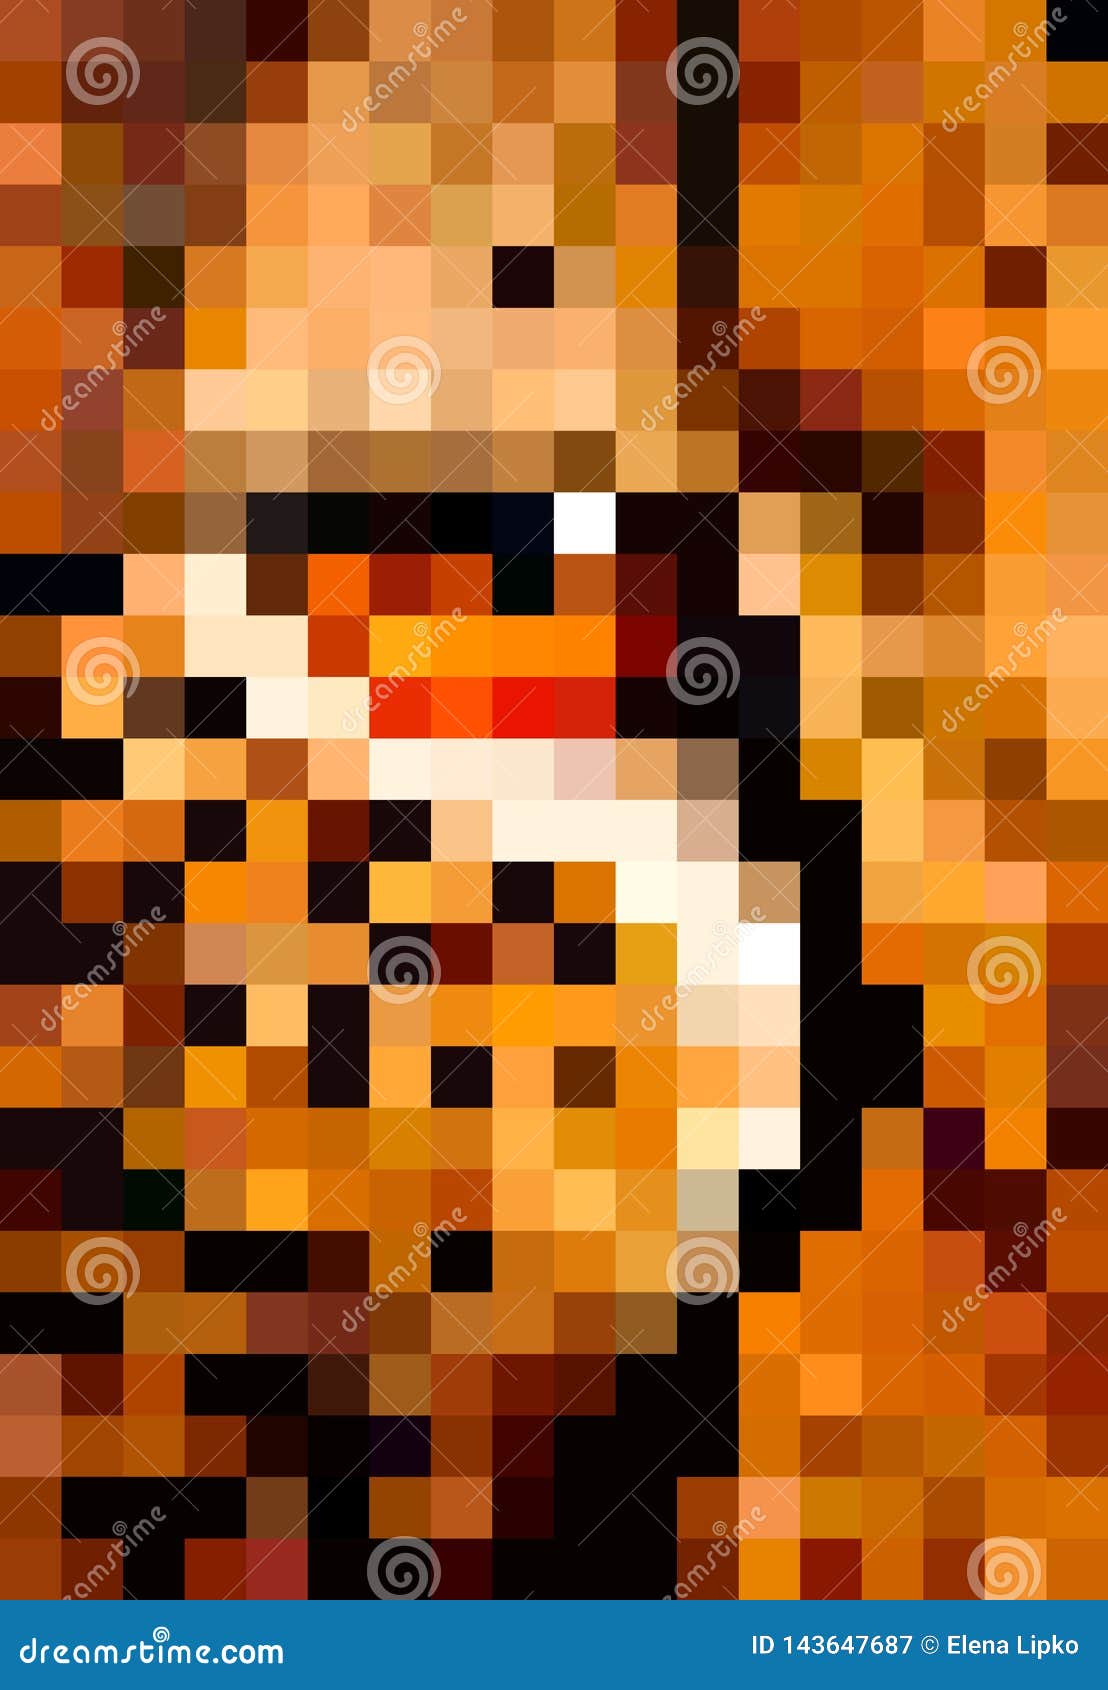 Art Animal De Pixel Oeil Dillustration De Pixel De Léopard